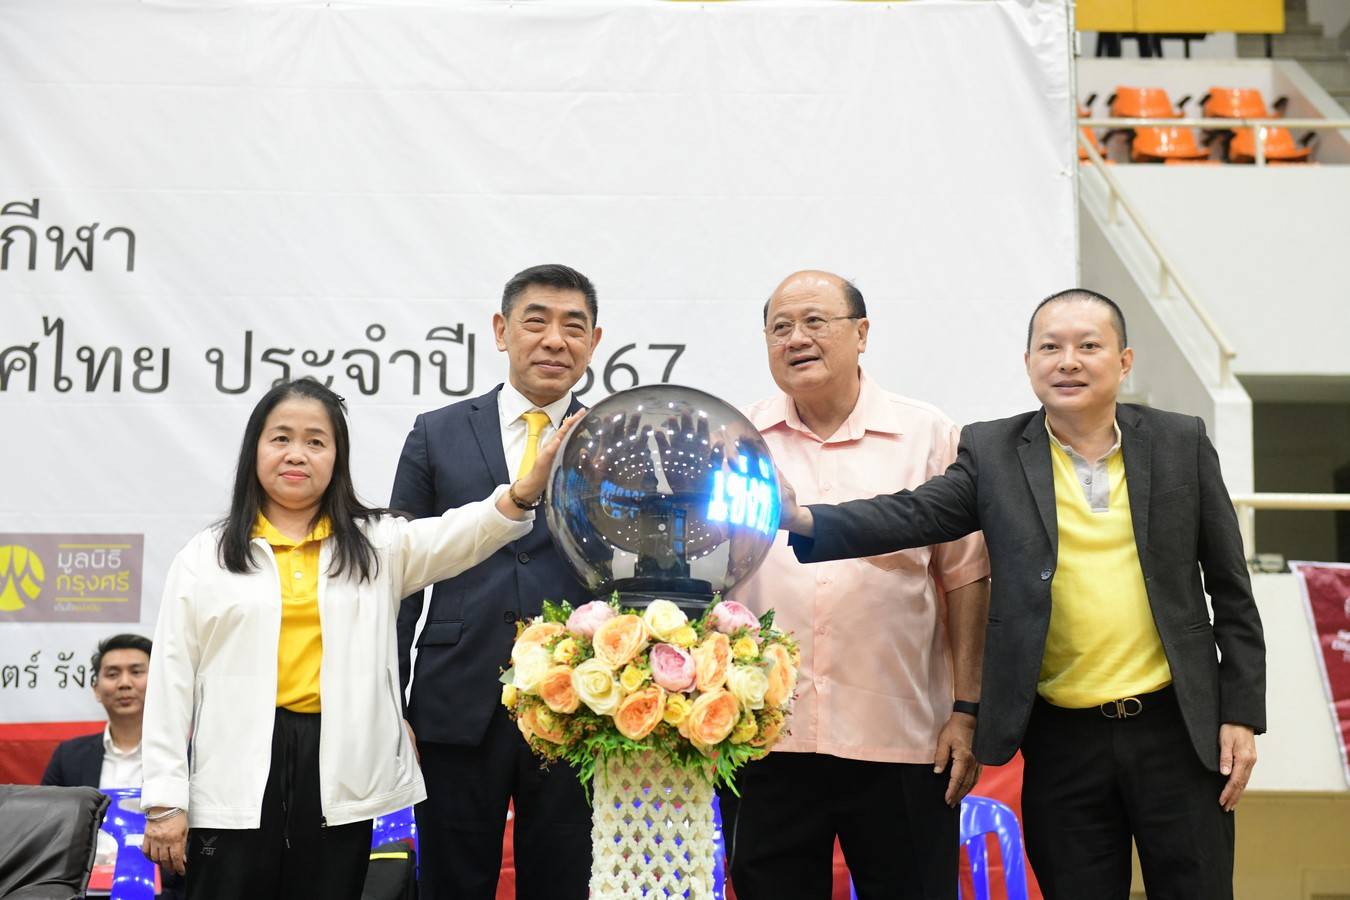 ธอส. ร่วมสนับสนุนจัดการแข่งขัน “มหกรรมกีฬาสเปเชียลโอลิมปิคไทย ชิงแชมป์ประเทศไทย ประจำปี 2567”